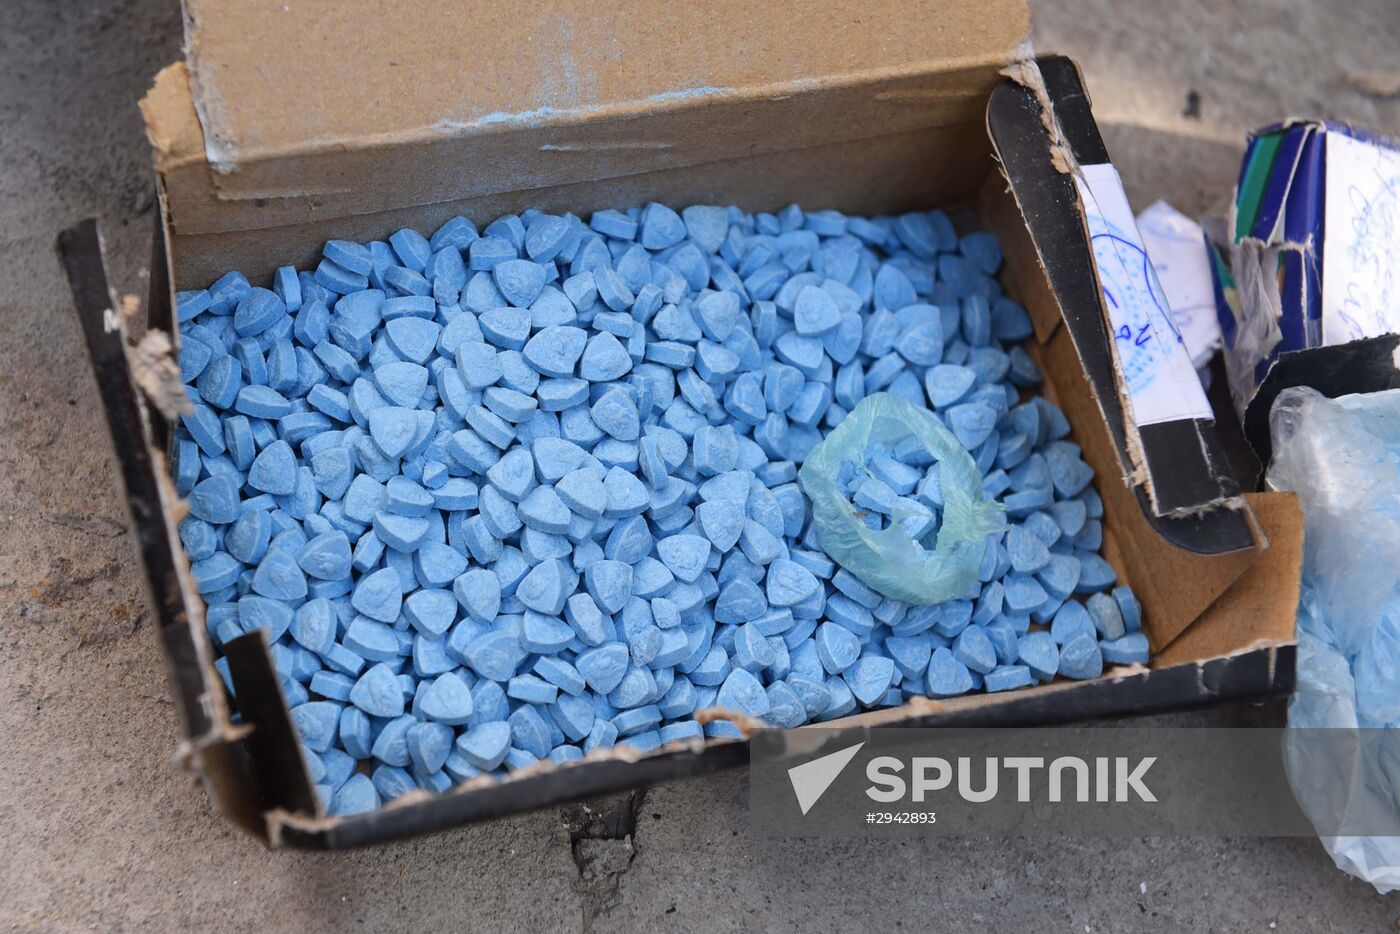 Destruction of drugs in Tajikistan